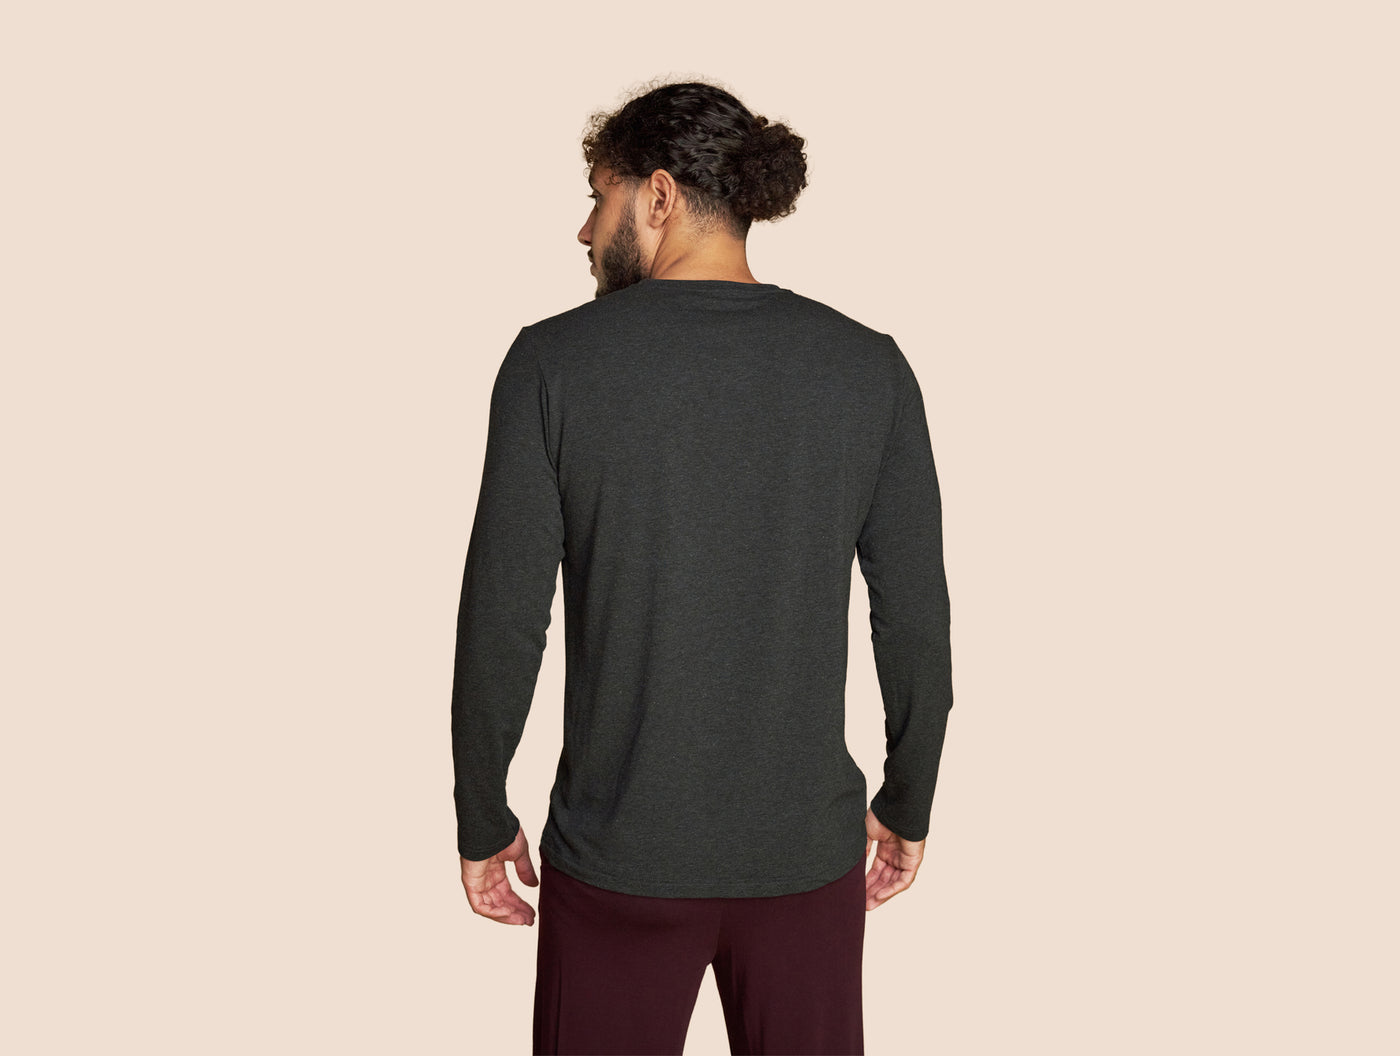 Pétrone T-shirt manches longues coton pima micromodal gris anthracite homme#couleur_gris-anthracite